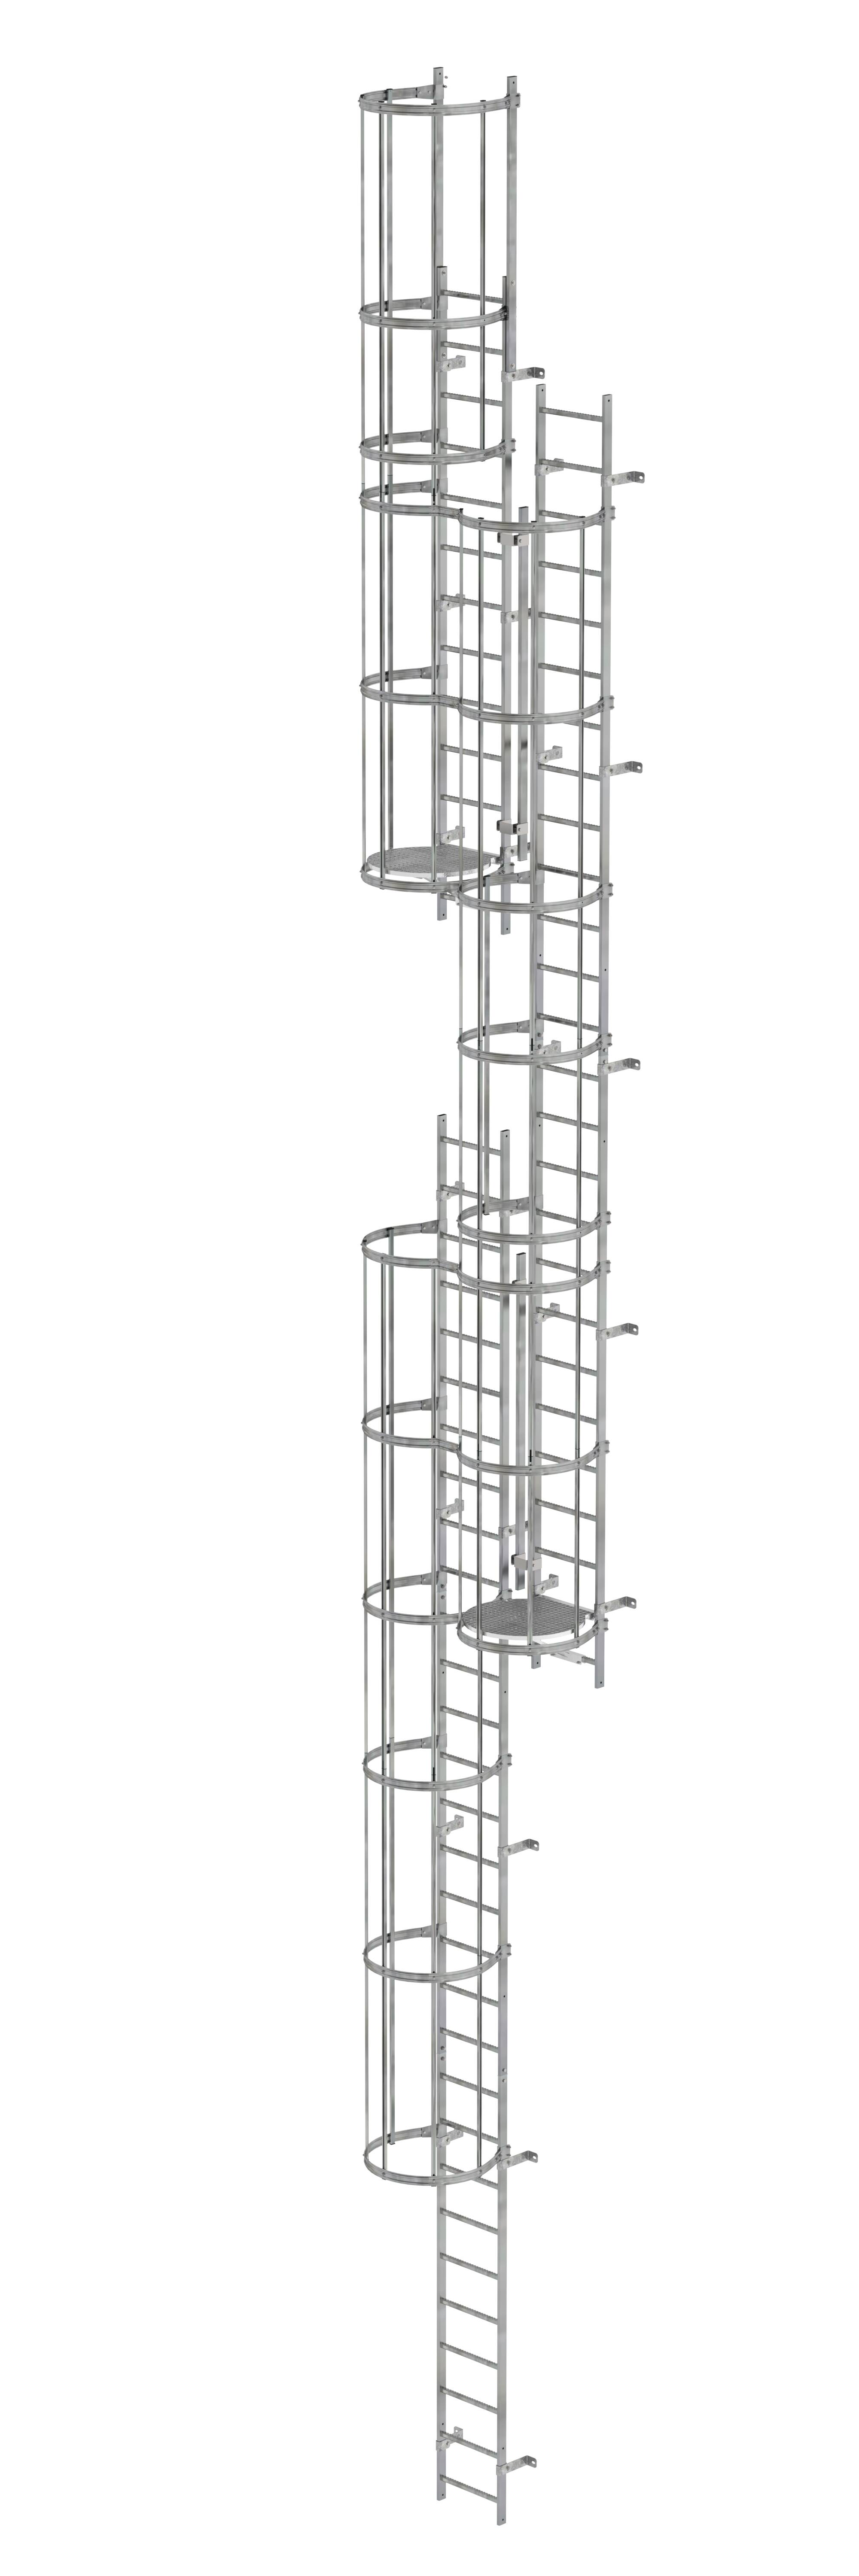 MUNK Mehrzügige Steigleiter mit Rückenschutz (Maschinen) Stahl verzinkt  